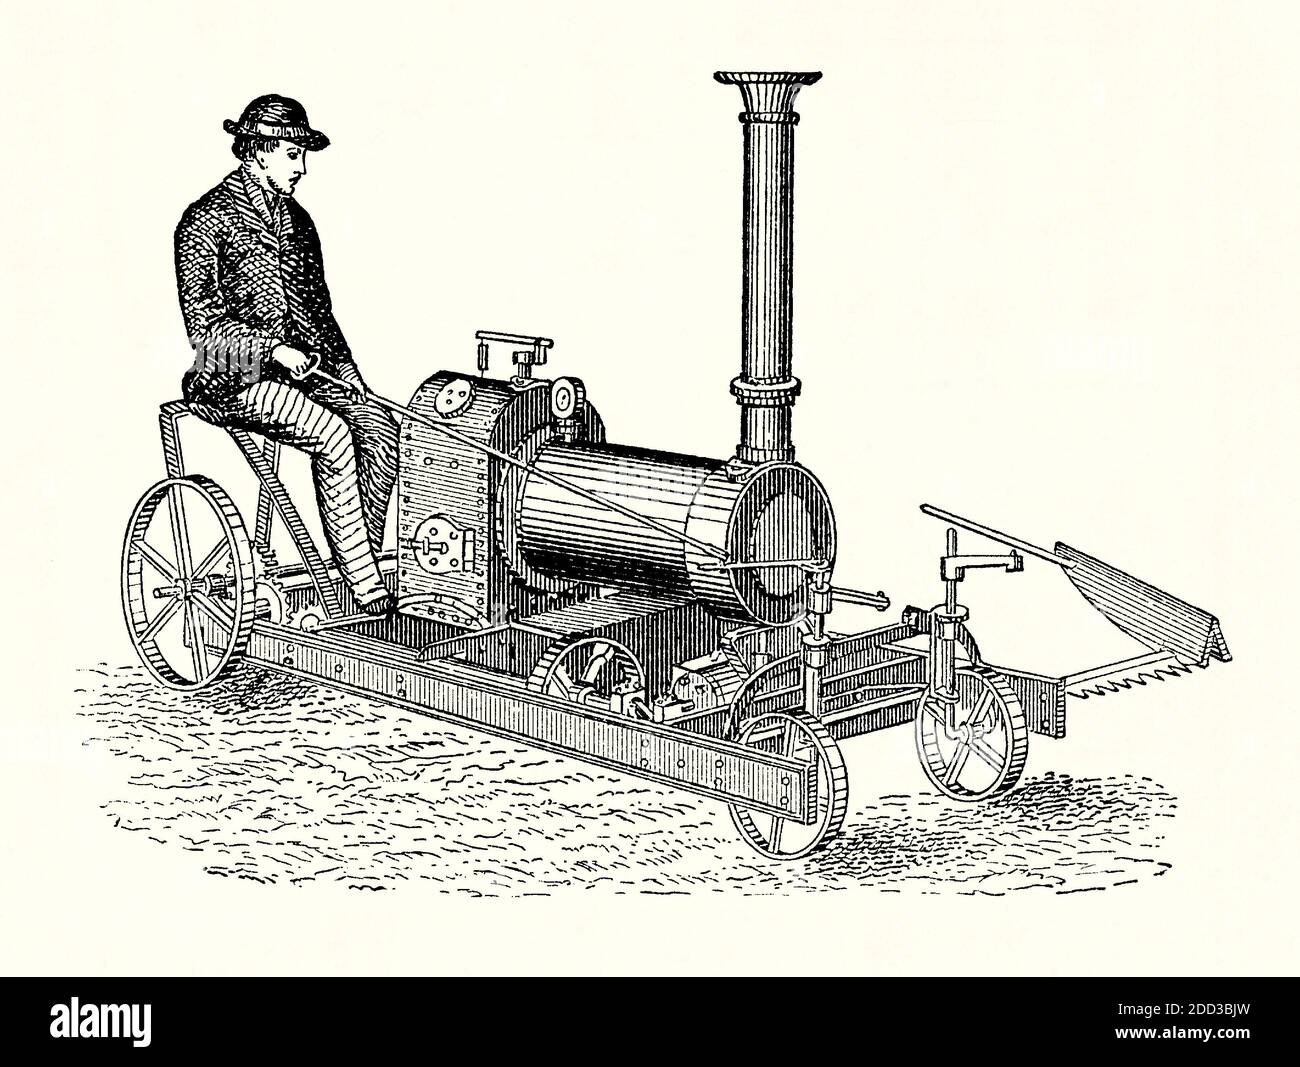 Eine alte Gravur eines dampfbetriebenen Rasenmähers. Es ist aus einem viktorianischen Maschinenbaubuch der 1880er Jahre. Der Rasenmäher wurde 1830 vom Engländer Edwin Beard Budding erfunden. Sein Handmäher war für das Schneiden von Gras auf Sportplätzen. Als Alternative zur Sense könnte sie näher am Boden schneiden. Pferde wurden verwendet, um größere Mäher ein Jahrzehnt später ziehen und Dampf-Rasenmäher wurden in den 1890er Jahren eingeführt, aber waren schwere und sperrige Maschinen. Es scheint, dass diese frühere Illustration eines kleinen Dampfmähers wahrscheinlich eher ein Künstlereindruck ist als eine Maschine, die hergestellt wurde Stockfoto